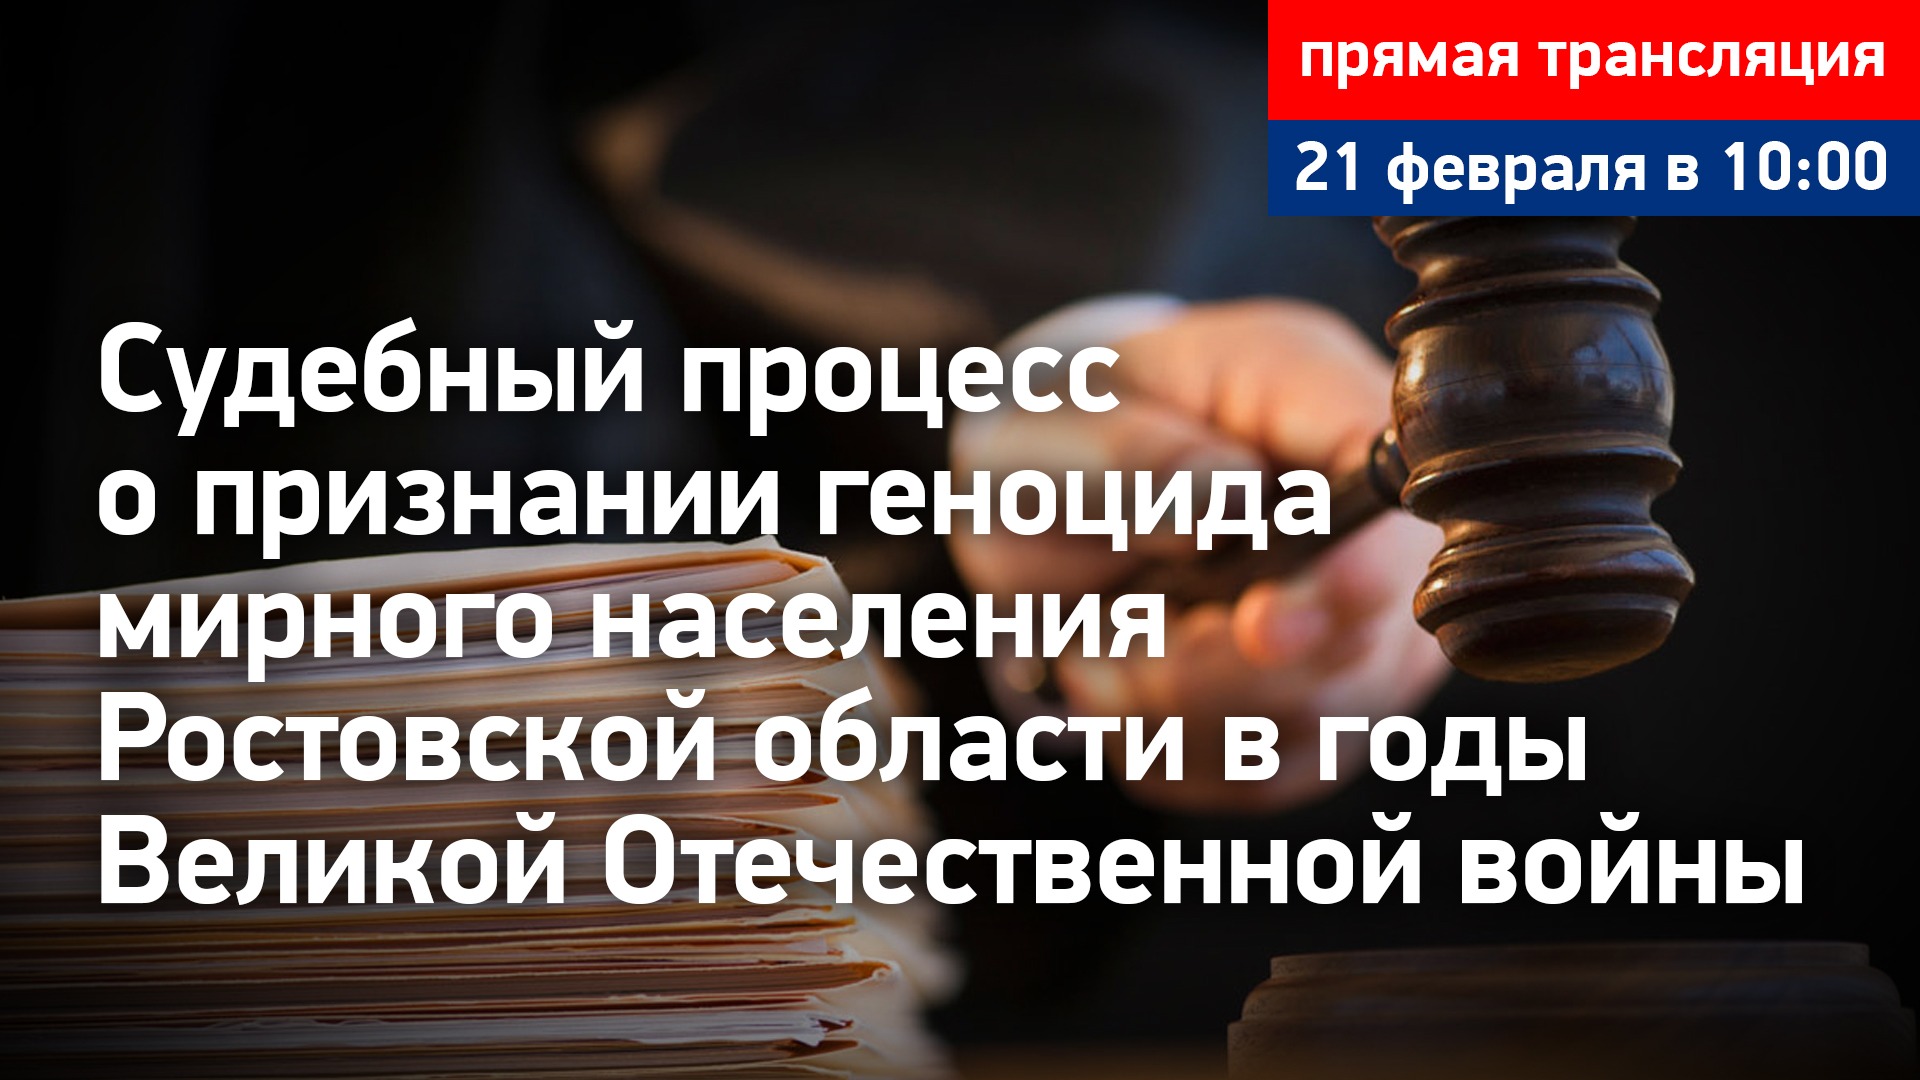 #4 Судебный процесс о признании геноцида мирного населения Ростовской области. Прямая трансляция